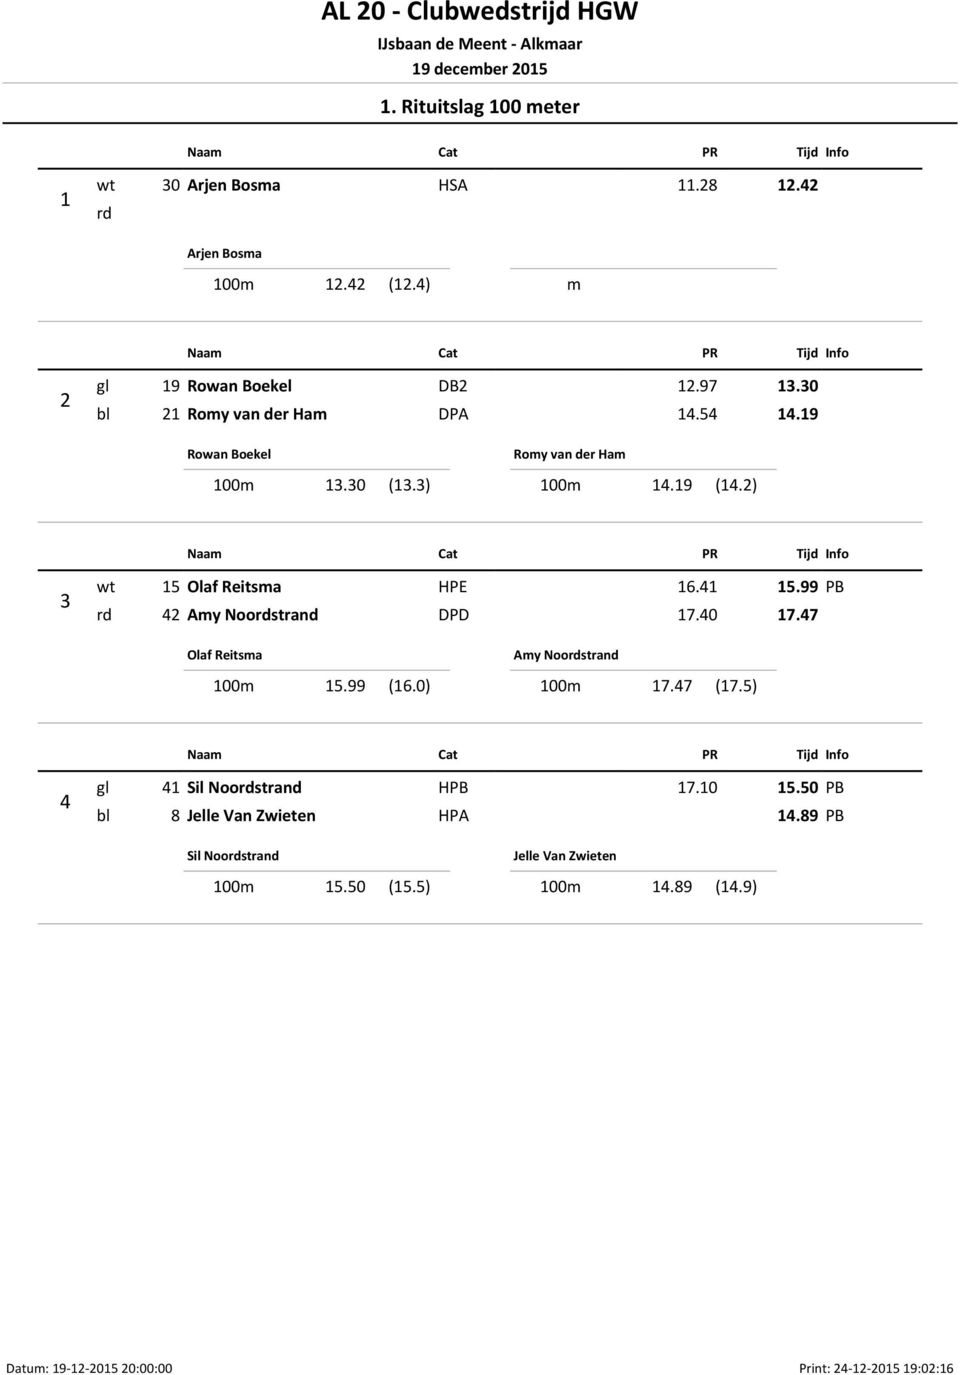 99 rd 42 Amy Noordstrand DPD 17.40 17.47 Olaf Reitsma 100m 15.99 (16.0) Amy Noordstrand 100m 17.47 (17.5) 4 gl 41 Sil Noordstrand H 17.10 15.